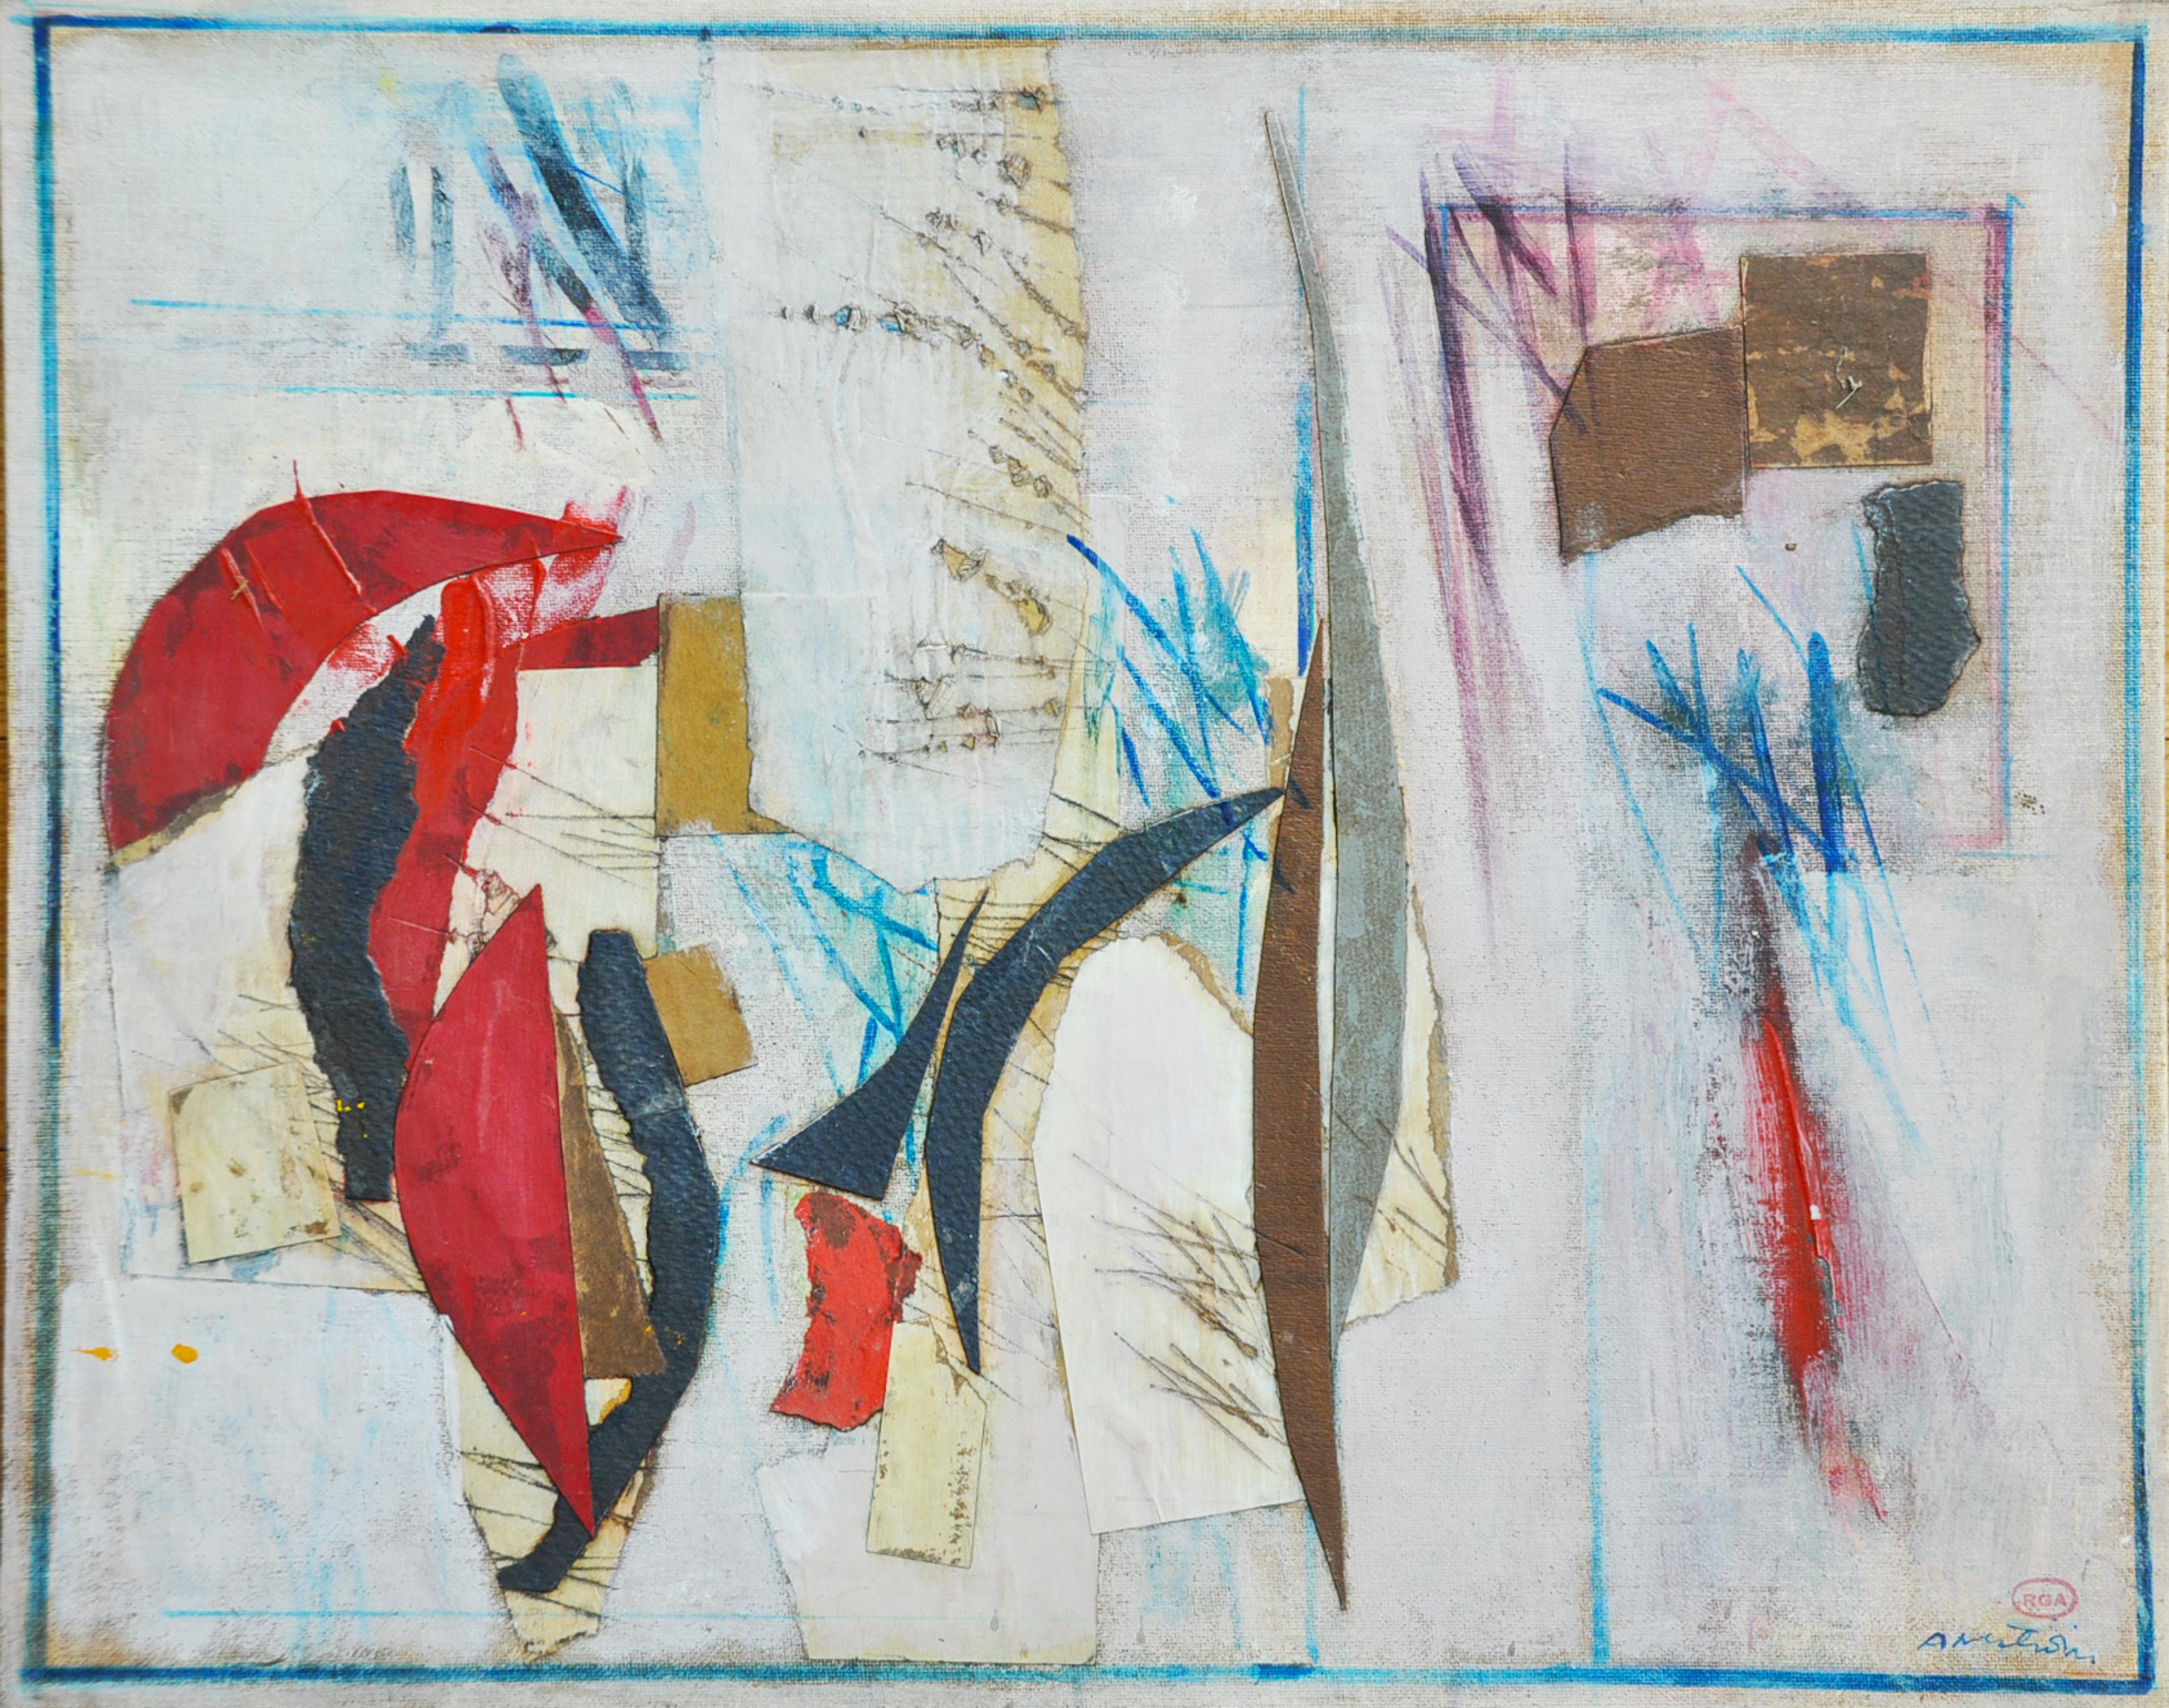 "Untitled Collage" des amerikanischen Künstlers Ronald Ahlstrom (1922 - 2012) ist eine abstrakte Collage aus gemischten Medien auf Leinwand, die irgendwann in den 70er Jahren entstand. Das abstrakte Werk besteht aus mehreren nebeneinanderliegenden